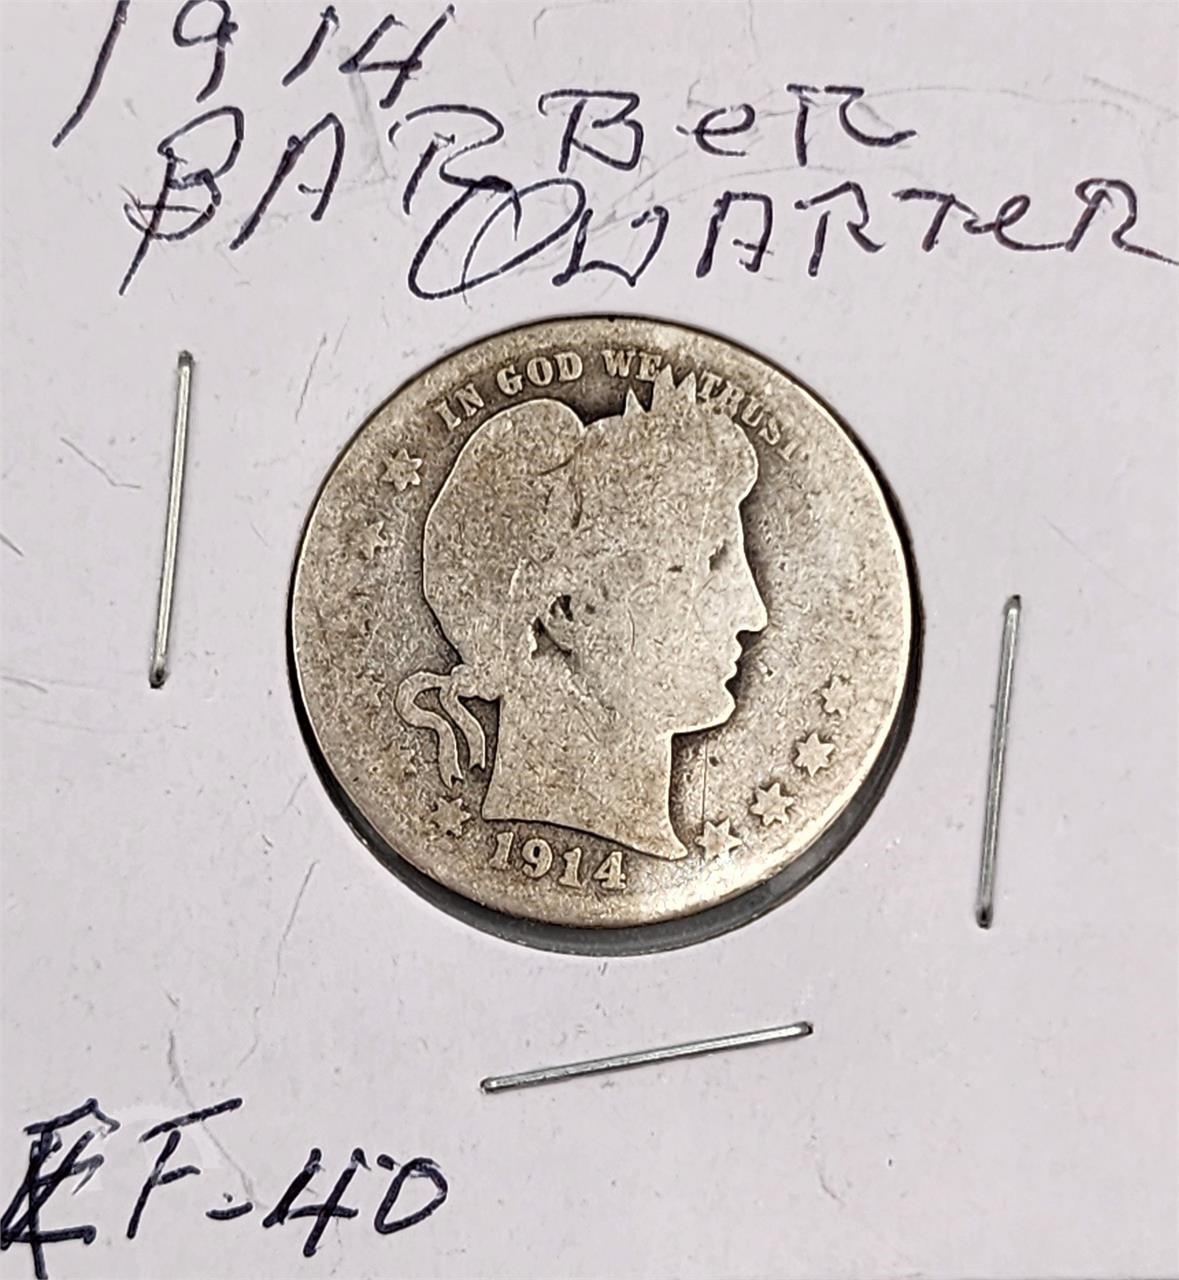 Coins & Paper Money,Estate Find 1853 Braided Hair Half Cent